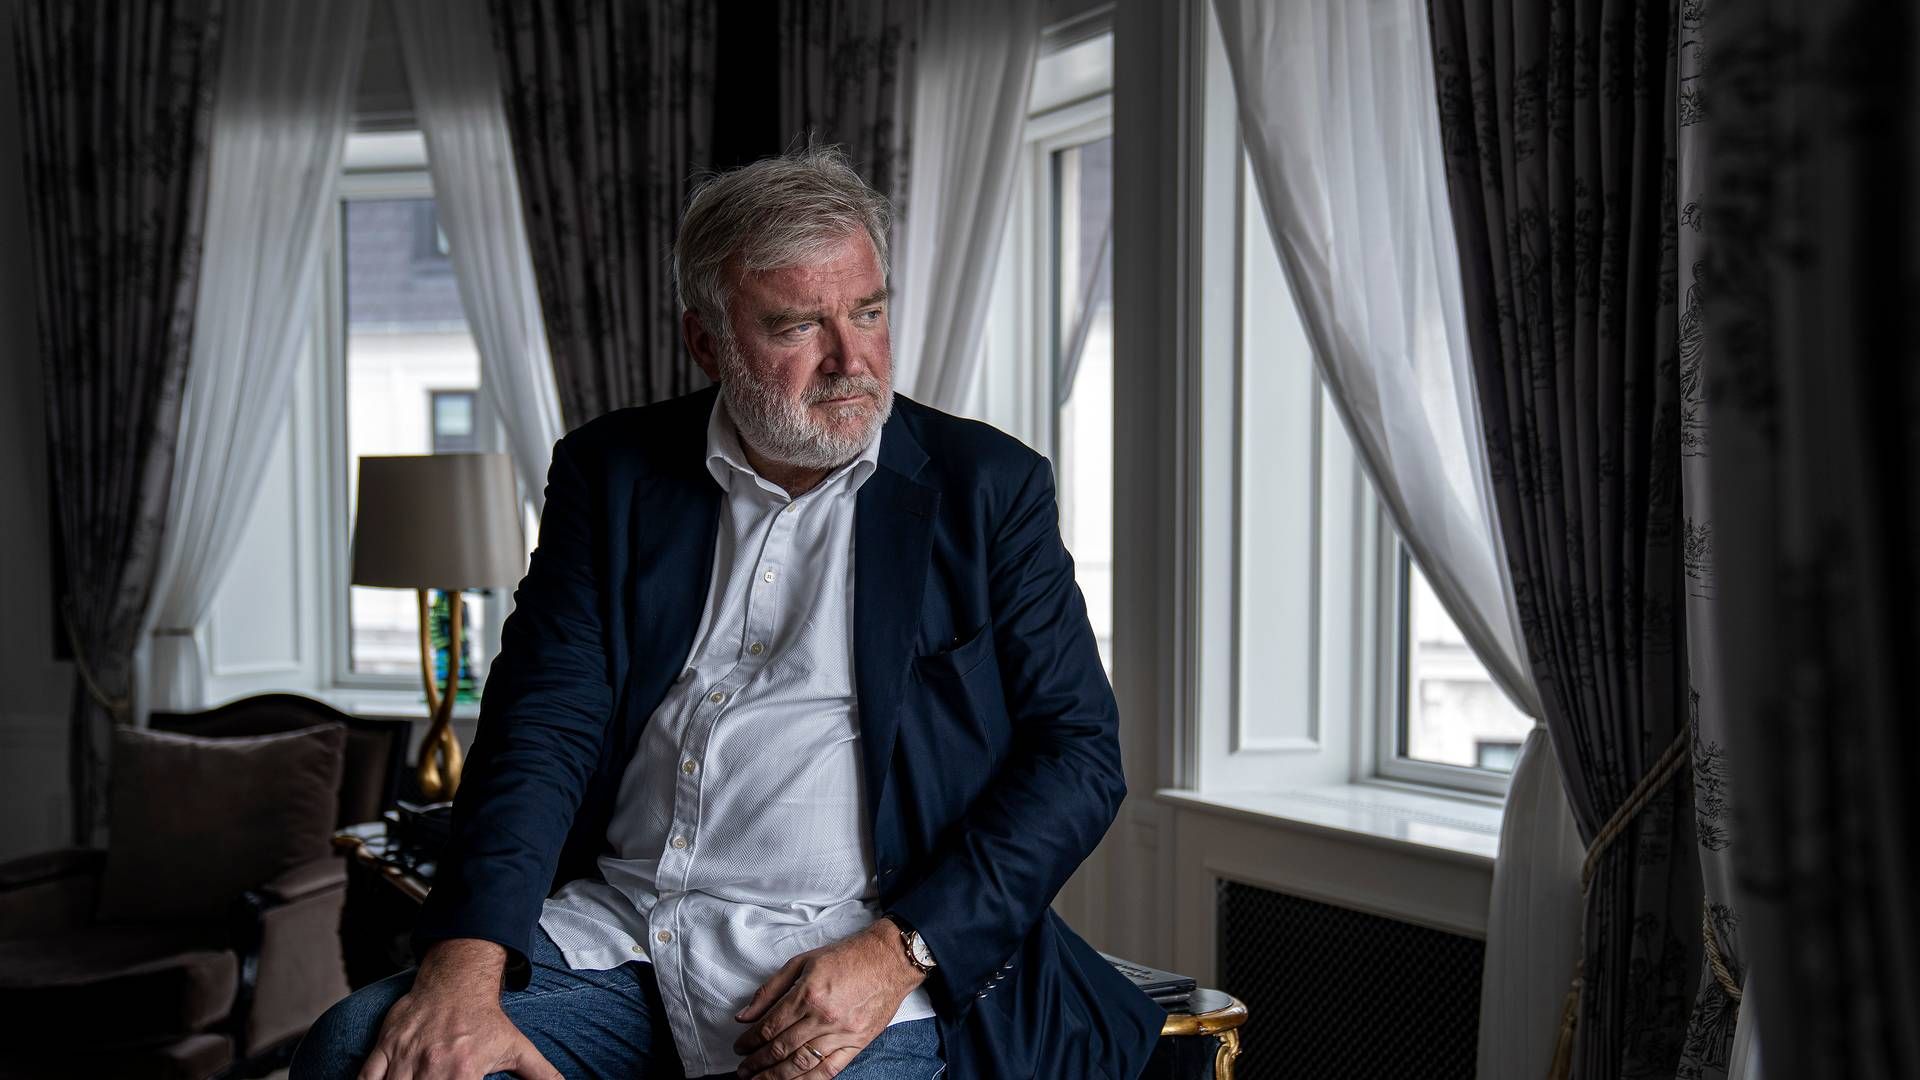 Erhvervsmanden Lars Seier Christensen er hovedaktionær i den tostjernede Michelin-restaurant Alchemist. | Foto: Stine Bidstrup/Ritzau Scanpix